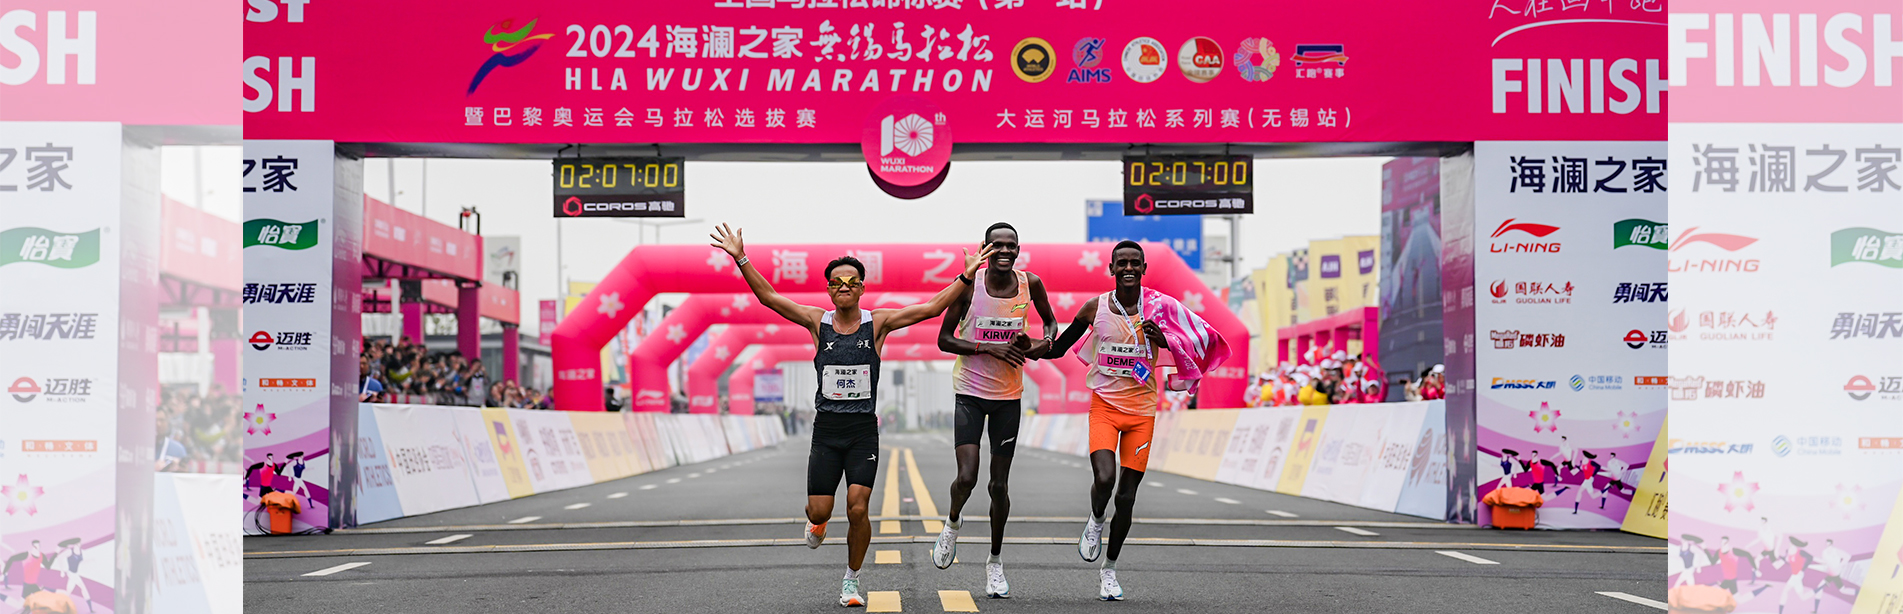 何杰2:06:57再度打破全国纪录，中国男子马拉松进入206时代